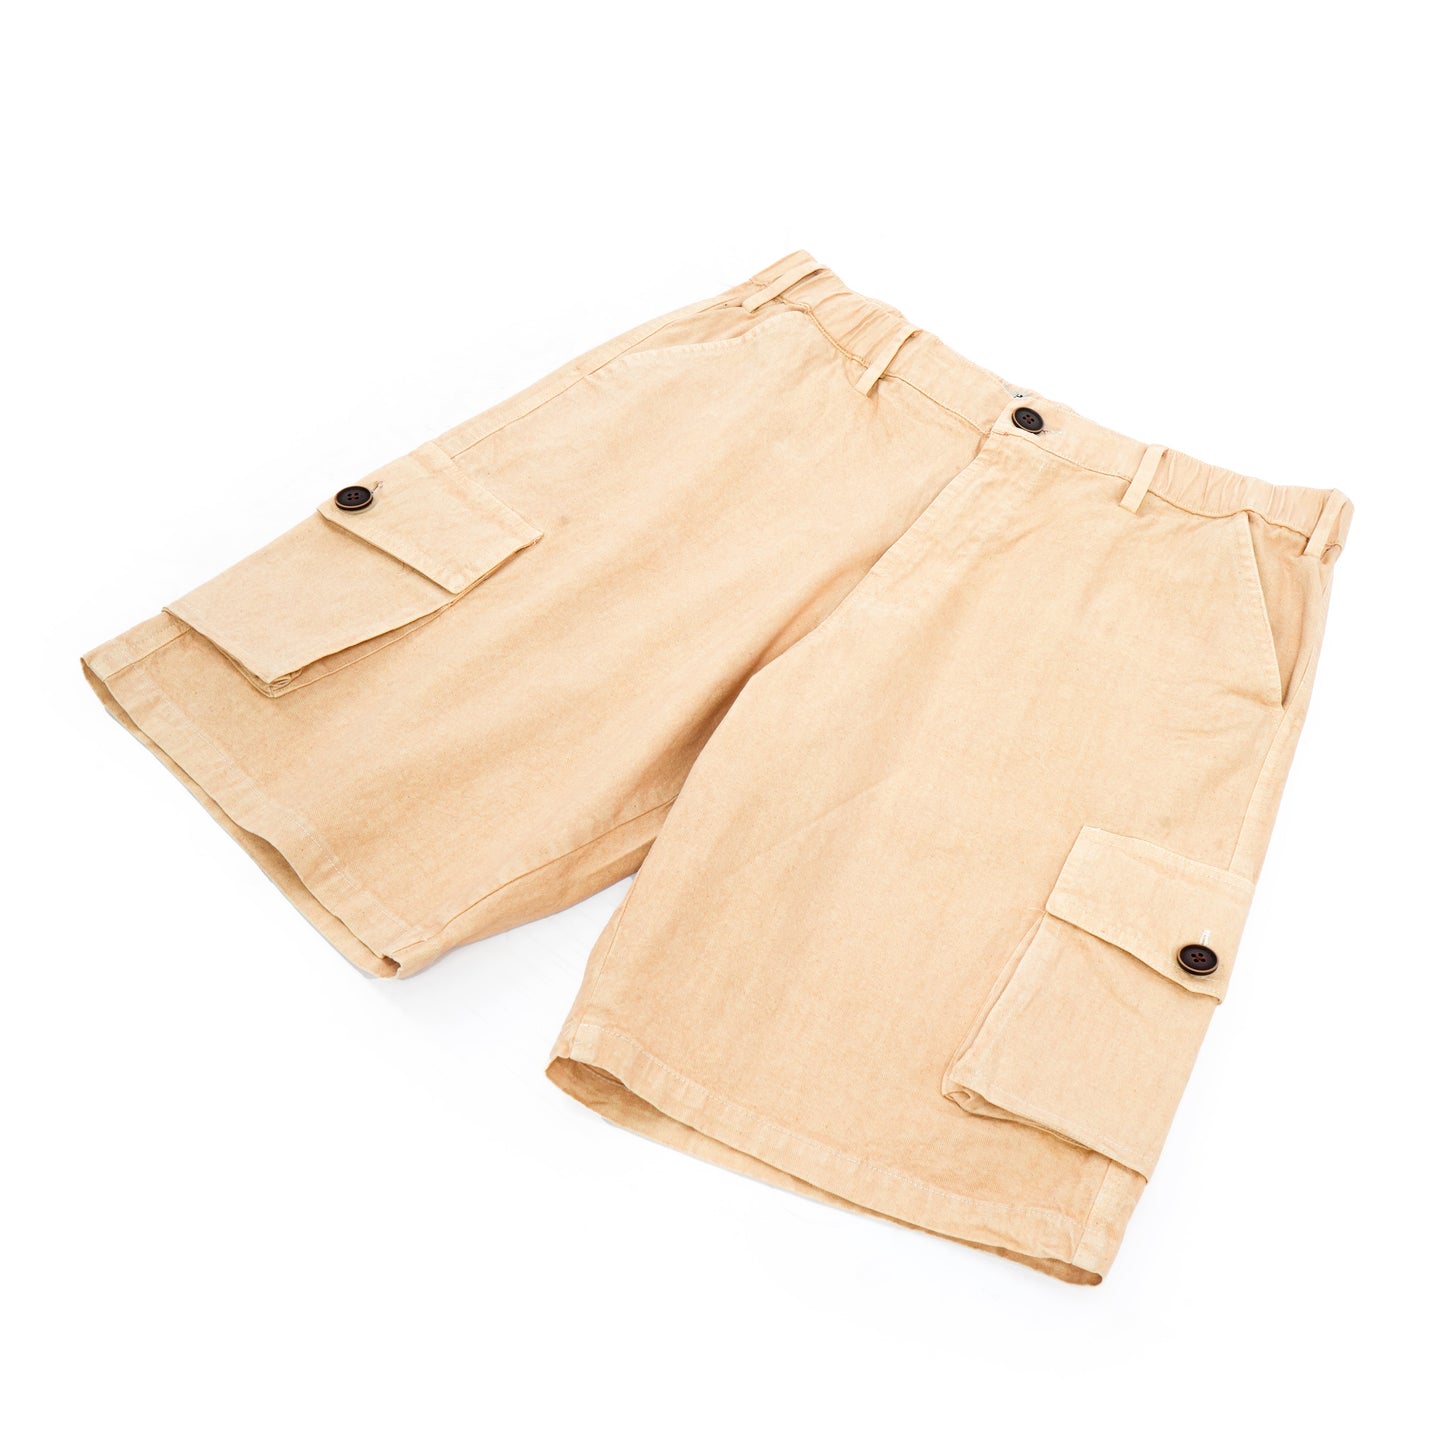 Barn Cargo Shorts